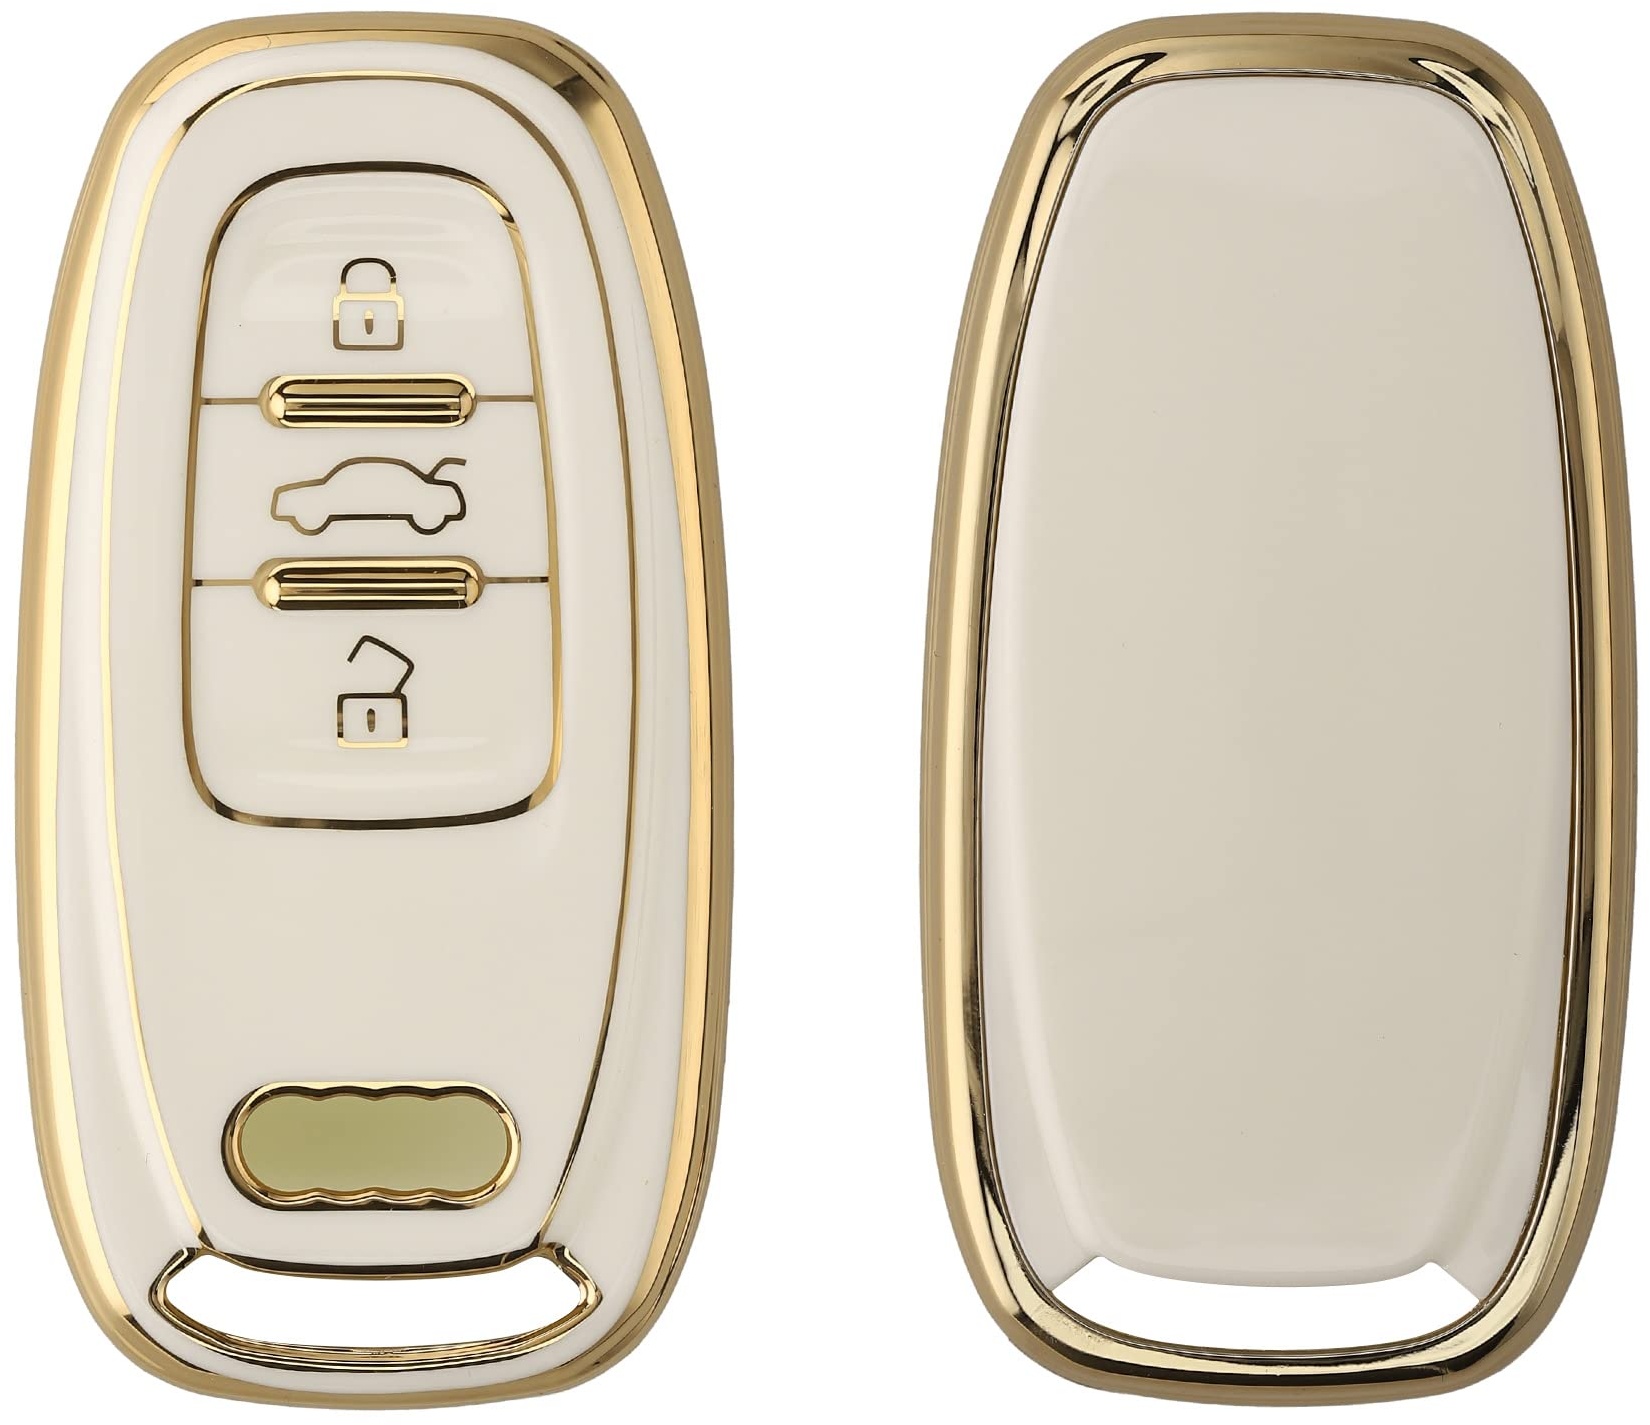 kwmobile Autoschlüssel Hülle kompatibel mit Audi 3-Tasten Autoschlüssel Keyless - Schlüsselhülle Silikon Cover - Weiß Gold